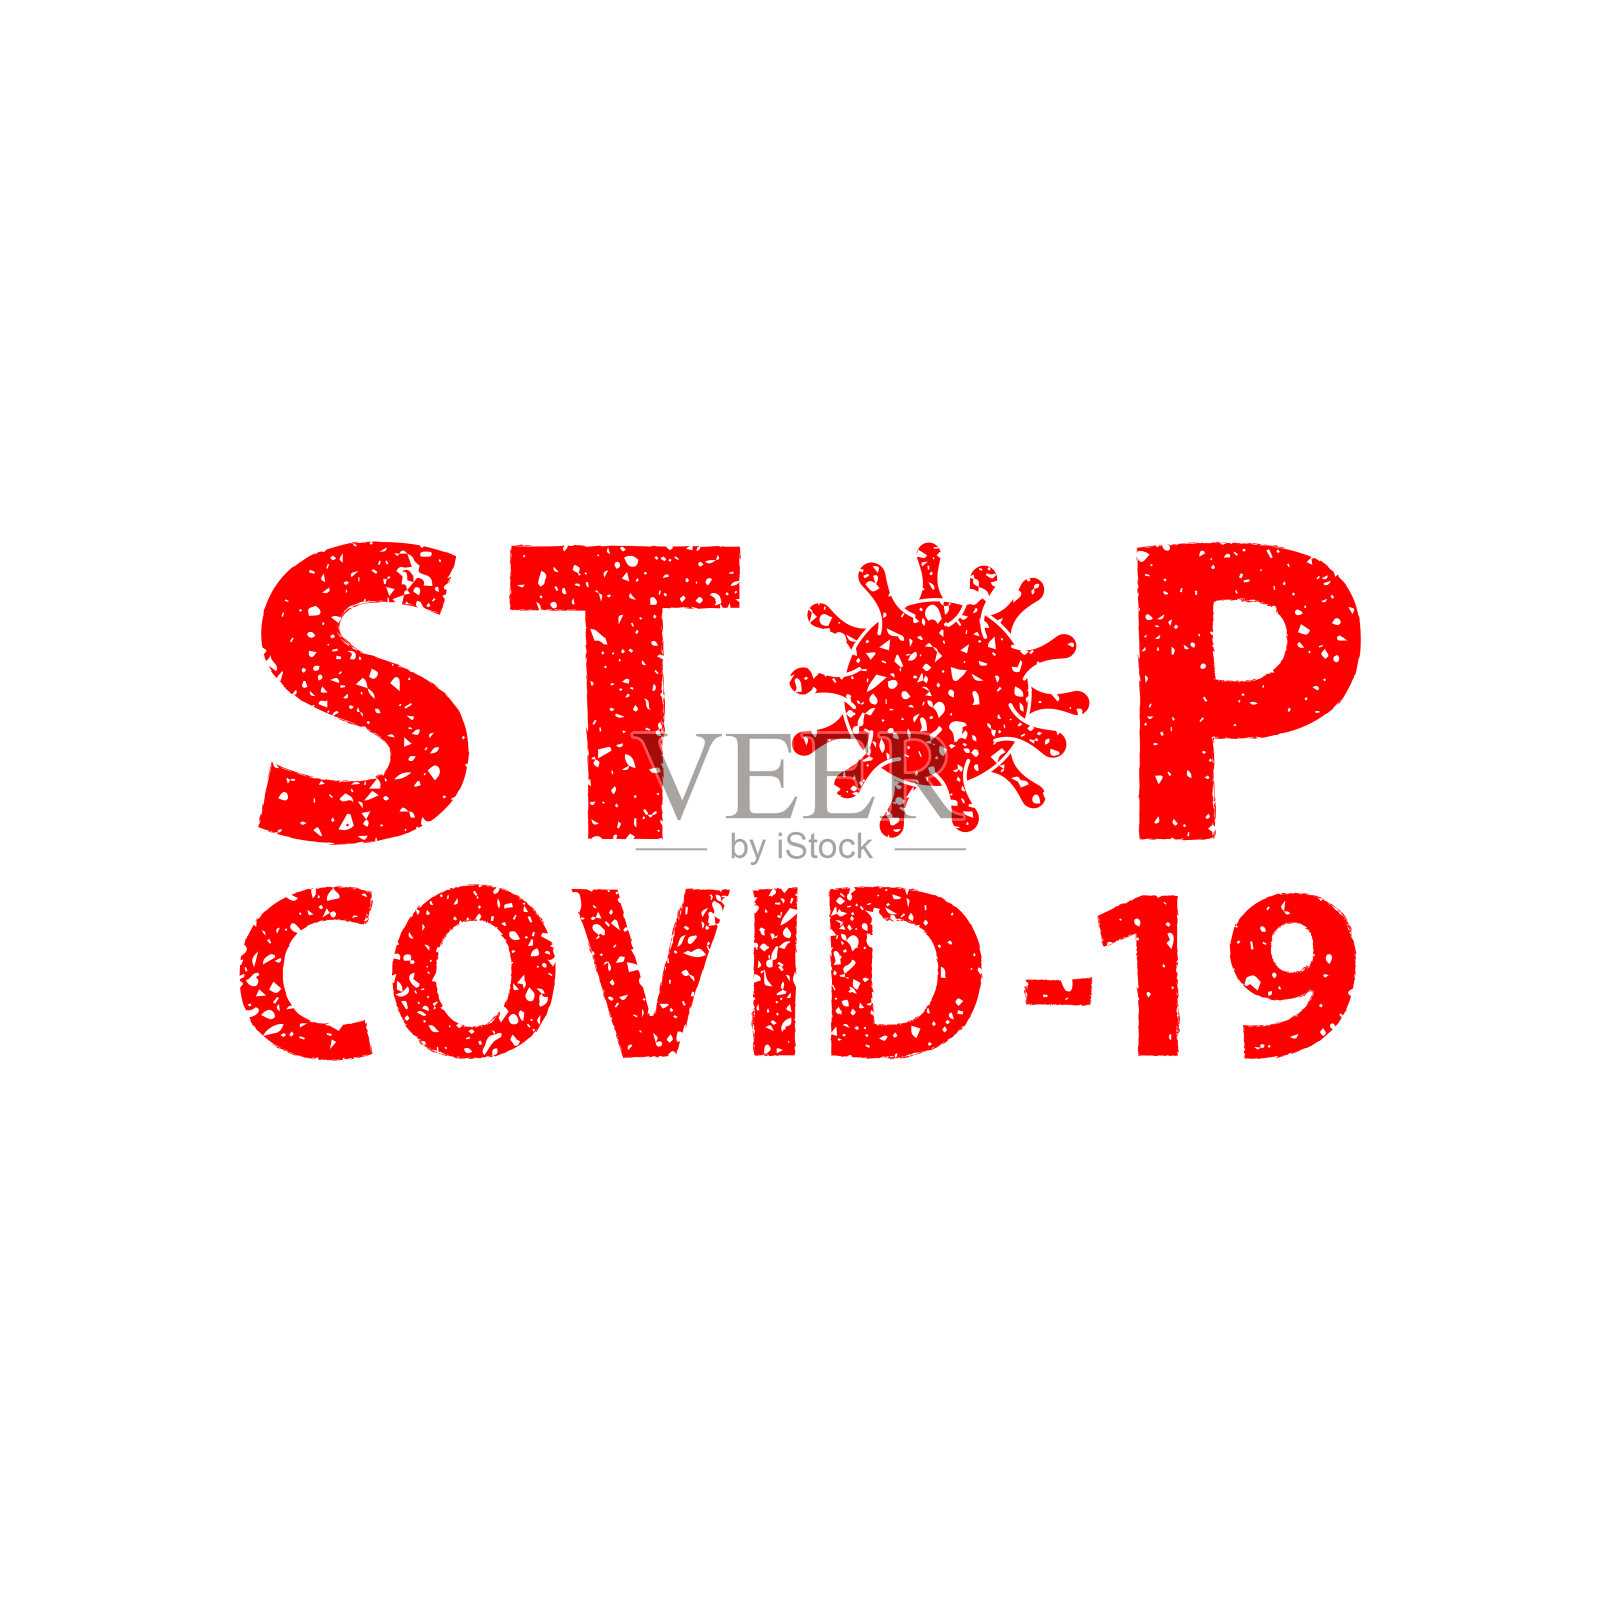 2019 - ncov冠状病毒。白色背景。Тext COVID-19停止。枯燥乏味的文字。插画图片素材